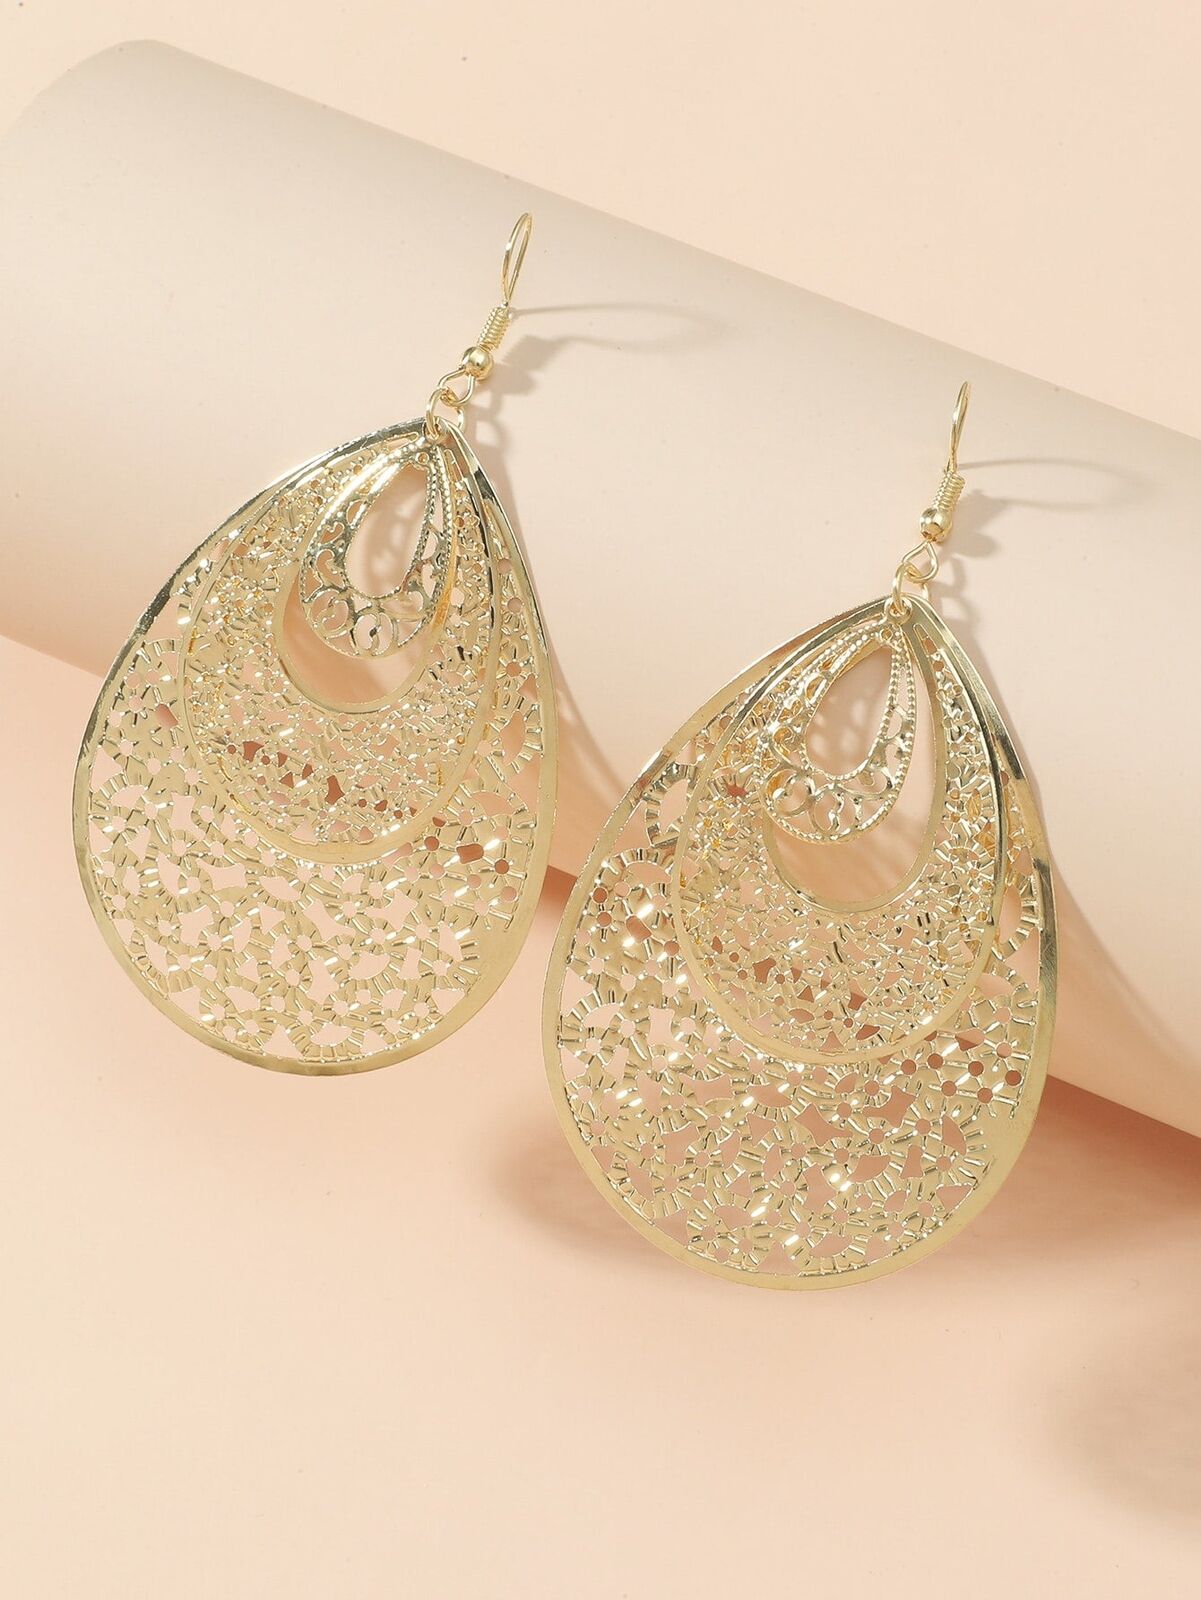 Hollow Out Water Drop Earrings Long Dangle Fashion Jewelry Jewellery for  Women | eBay